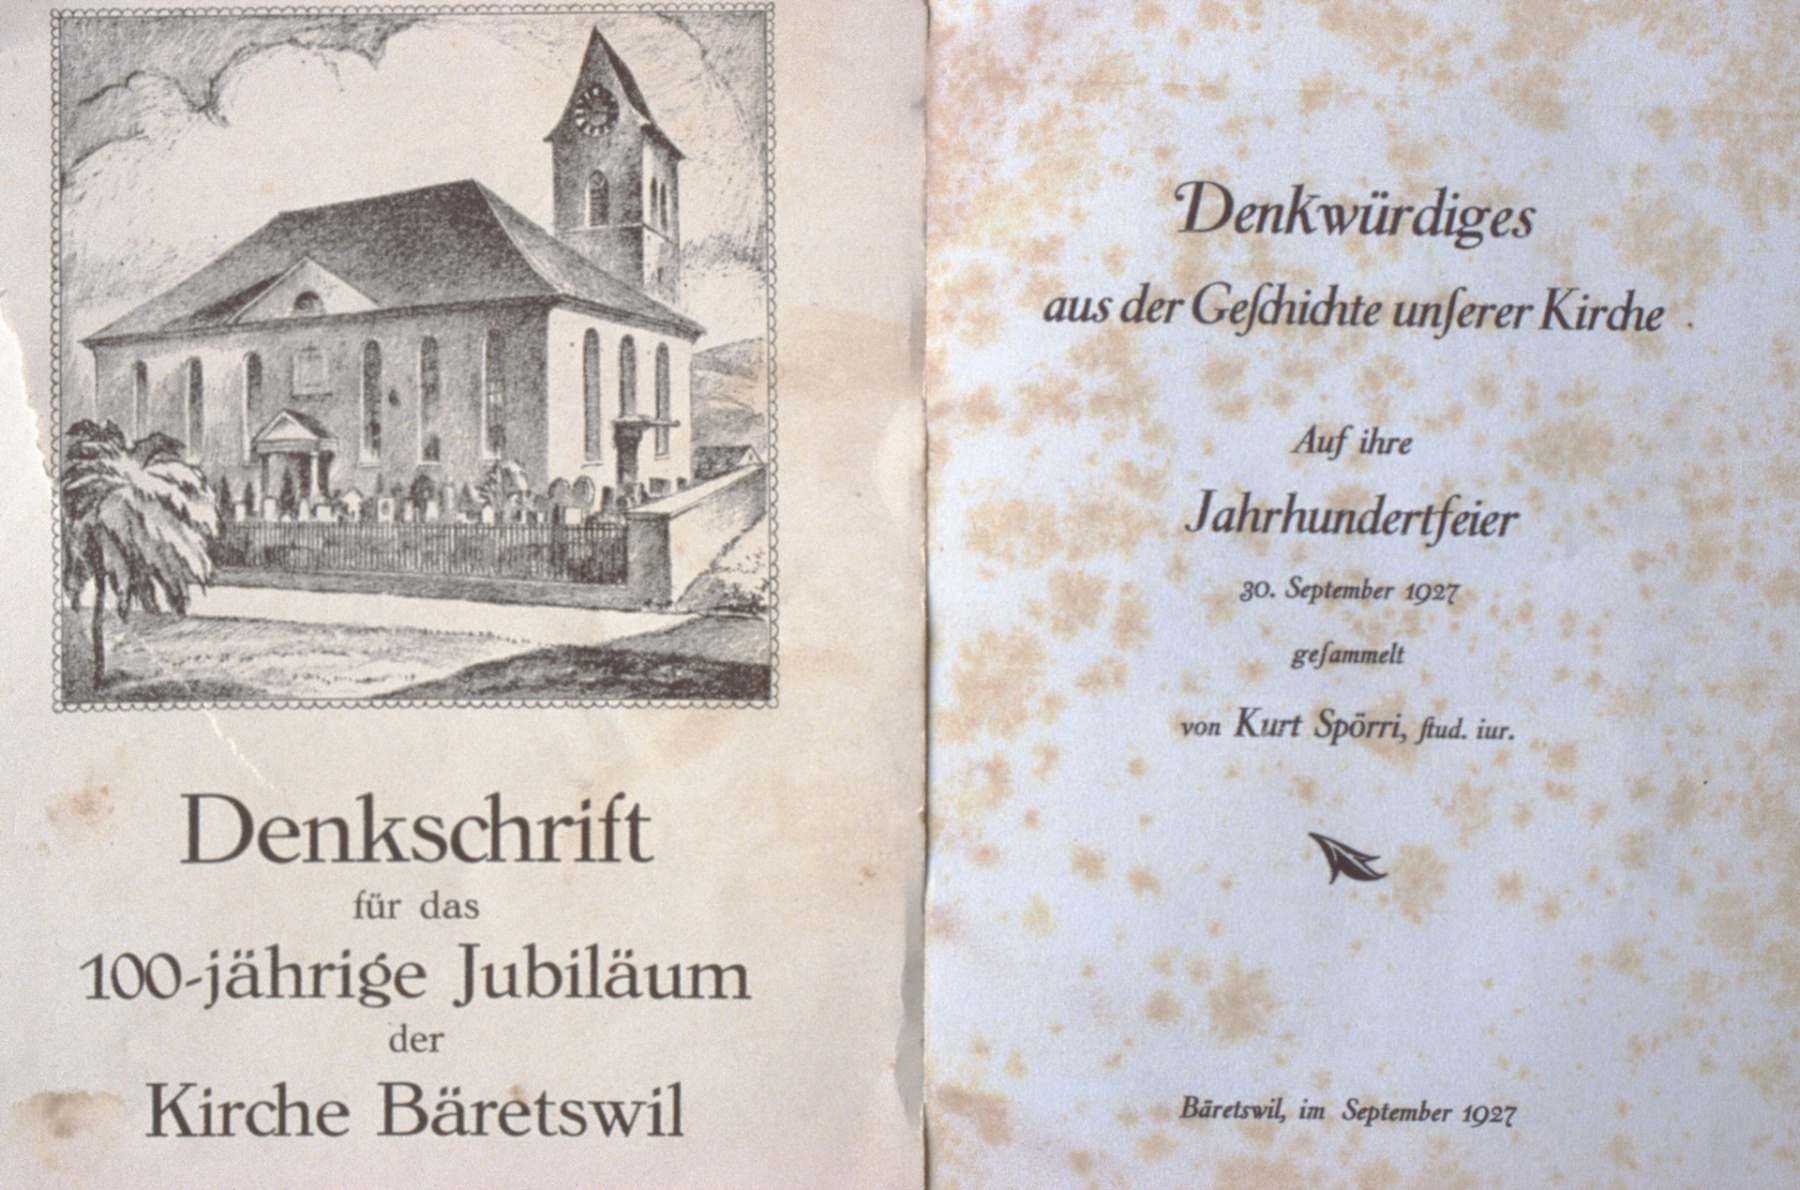 Denkschrift für das 100-jährige Jubiläum der Kirche Bäretswil 1927